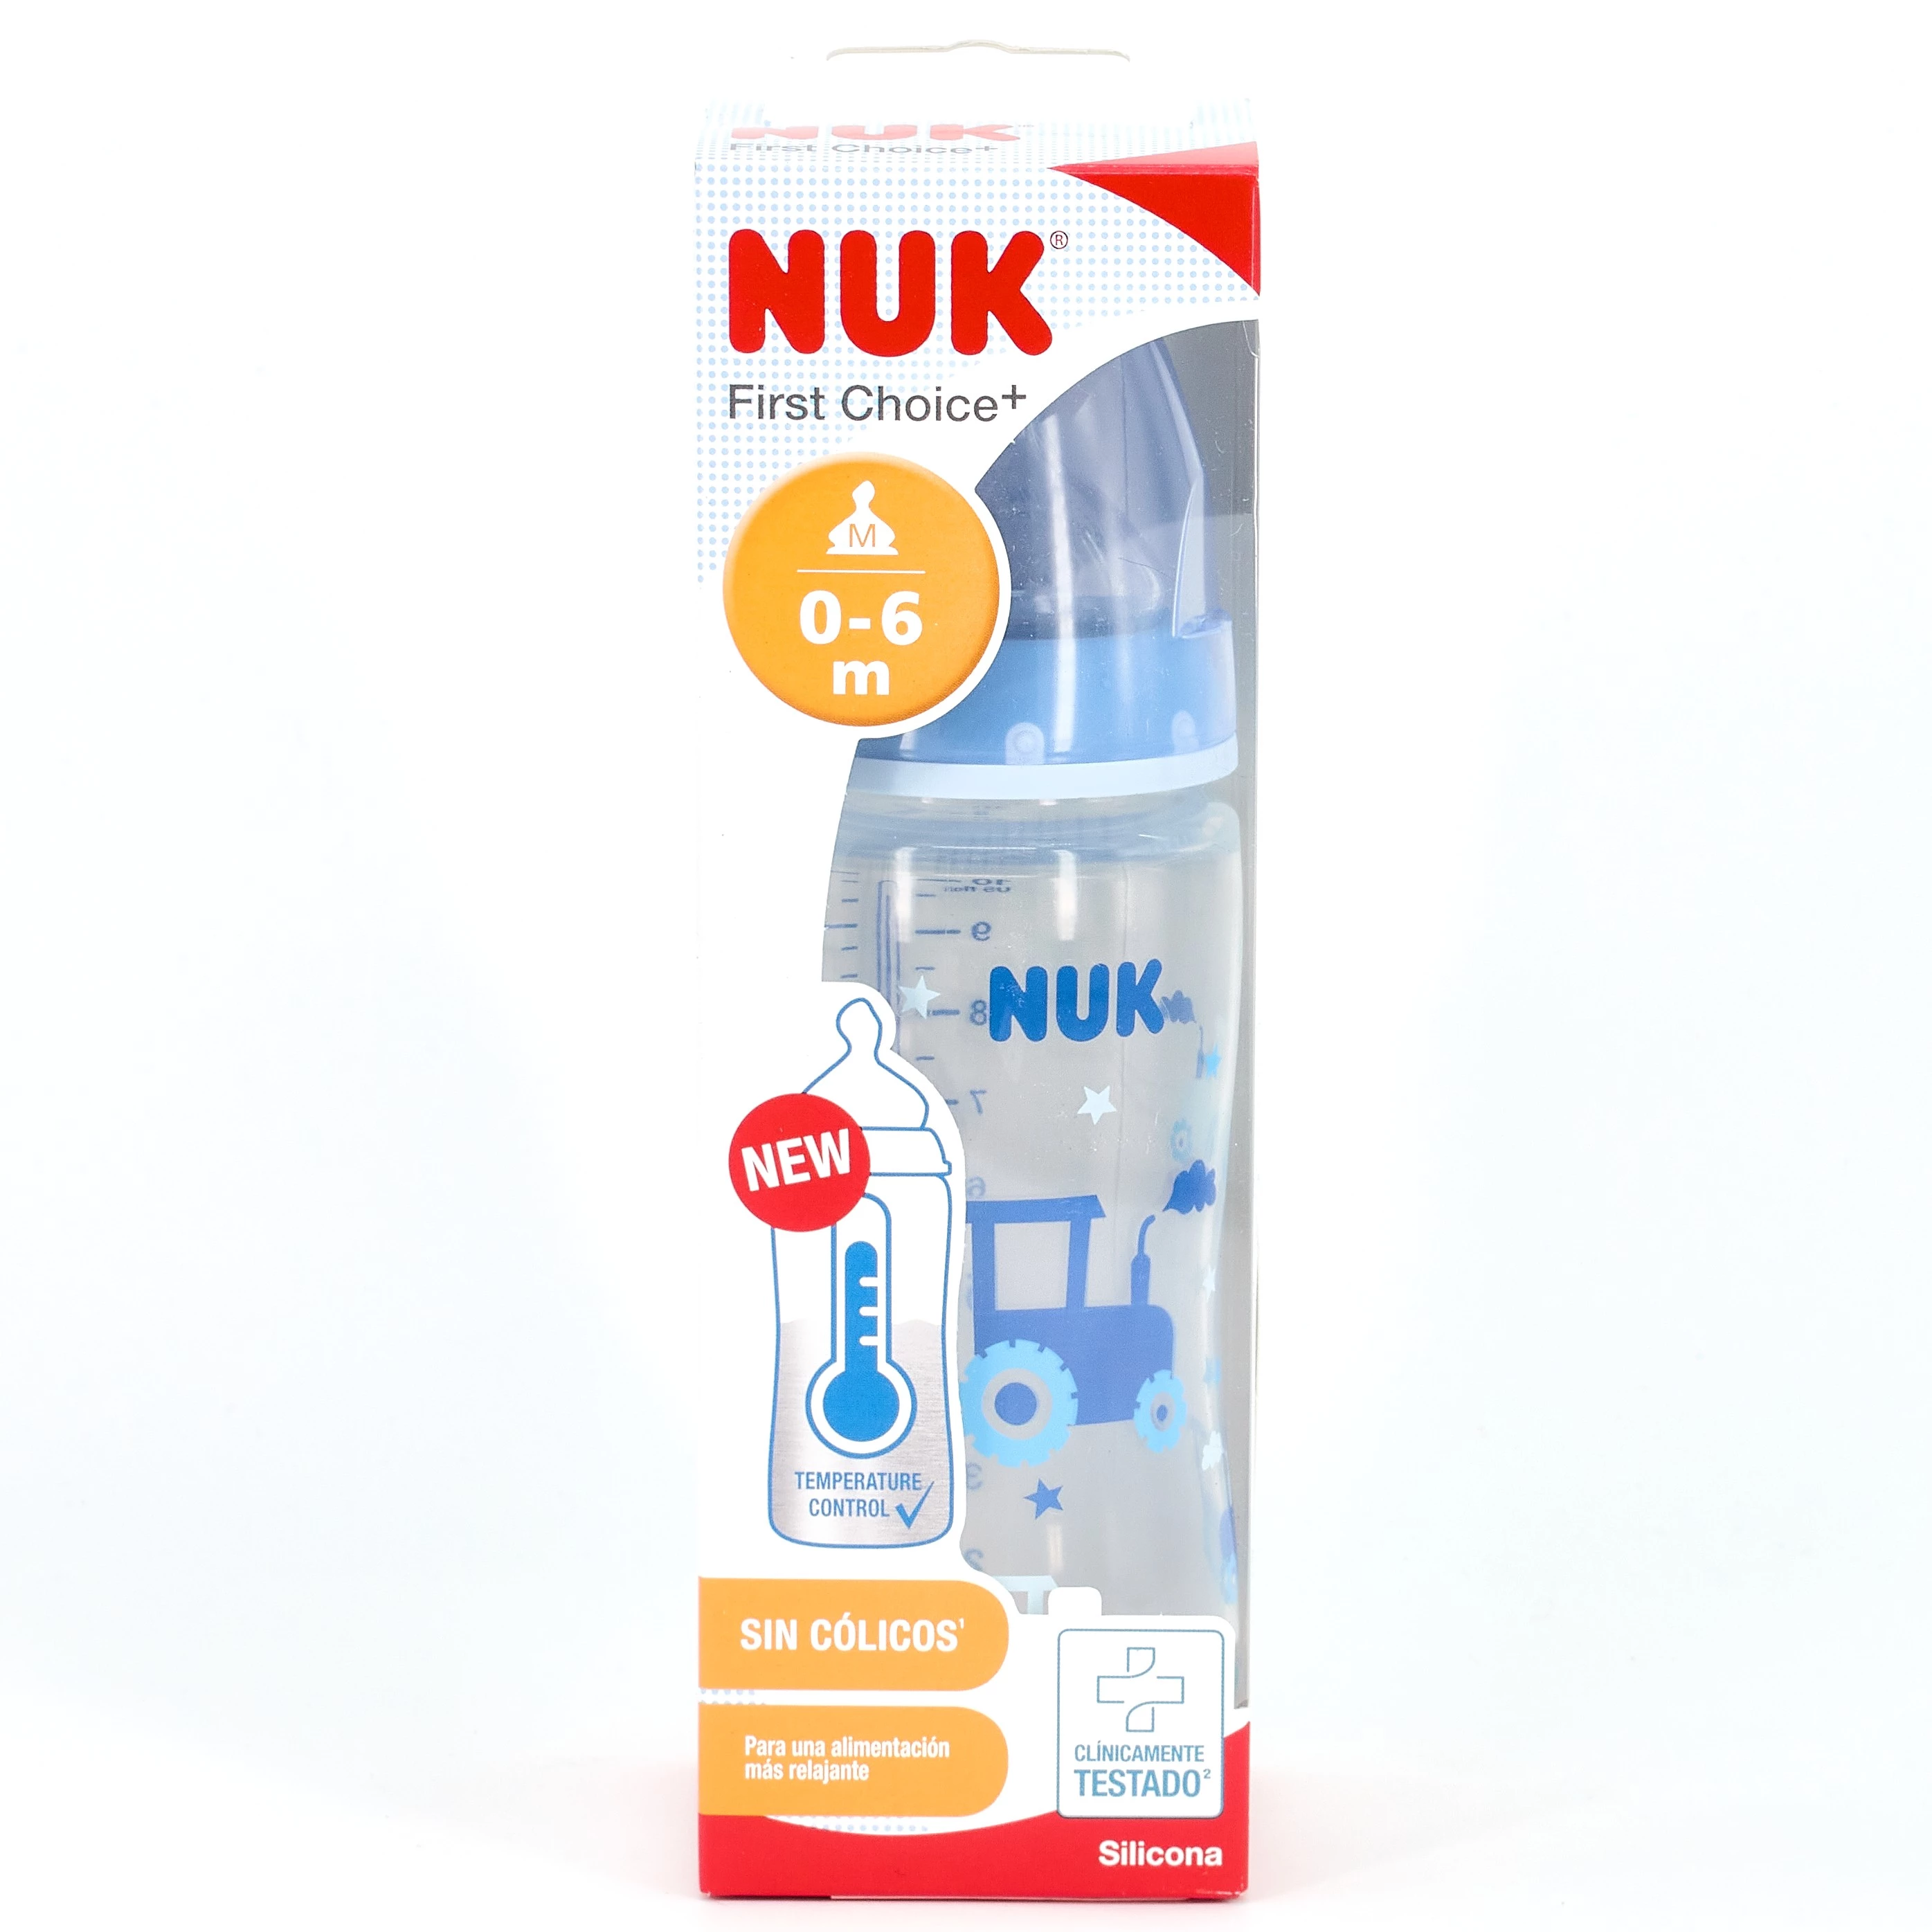 Un desarrollo saludable con Nuk - Valencia Farmacia